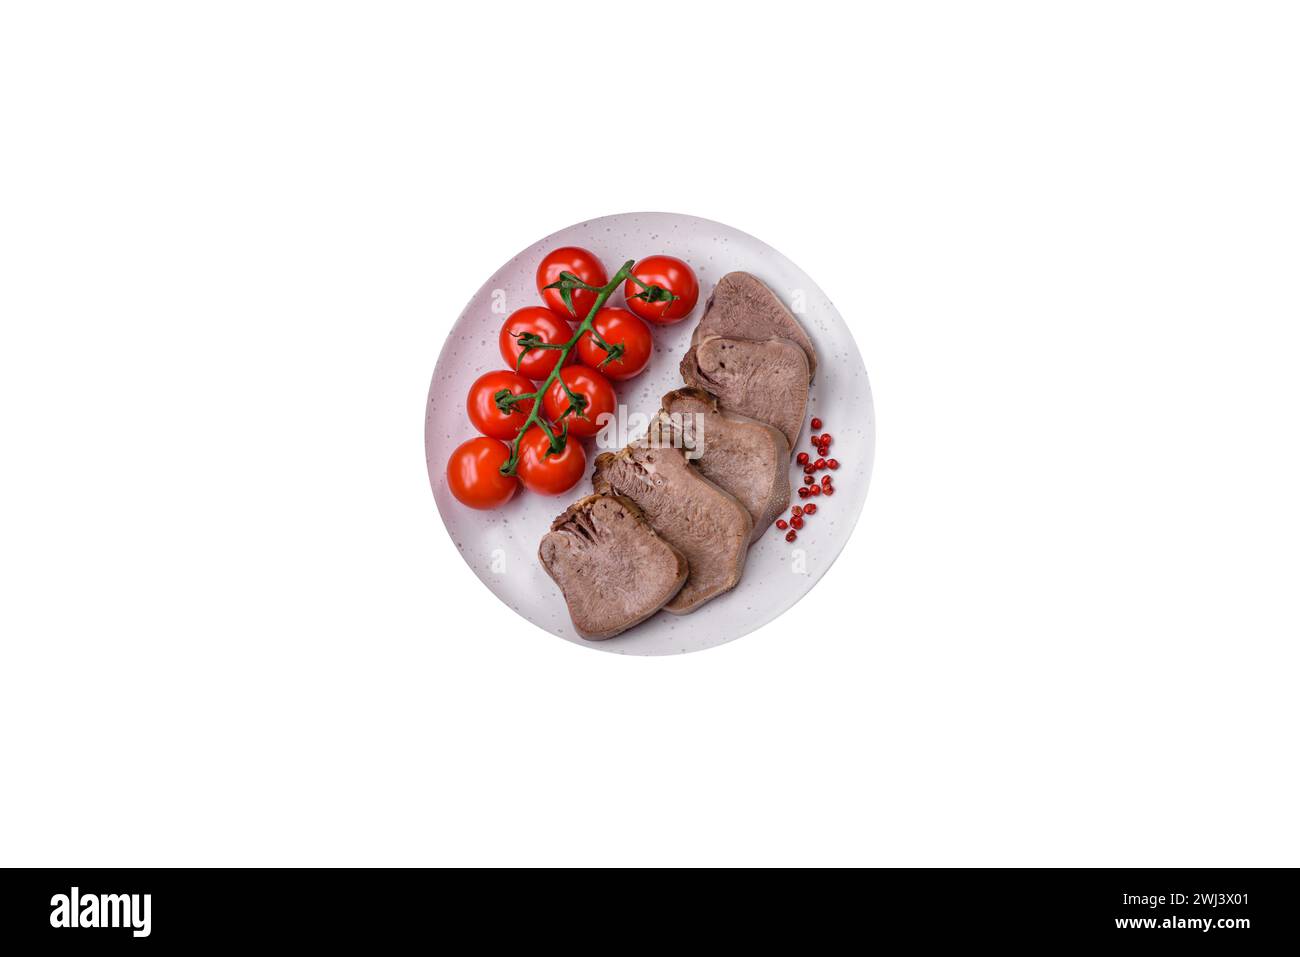 Délicieuse langue de boeuf bouillie tranchée avec des légumes et des épices Banque D'Images